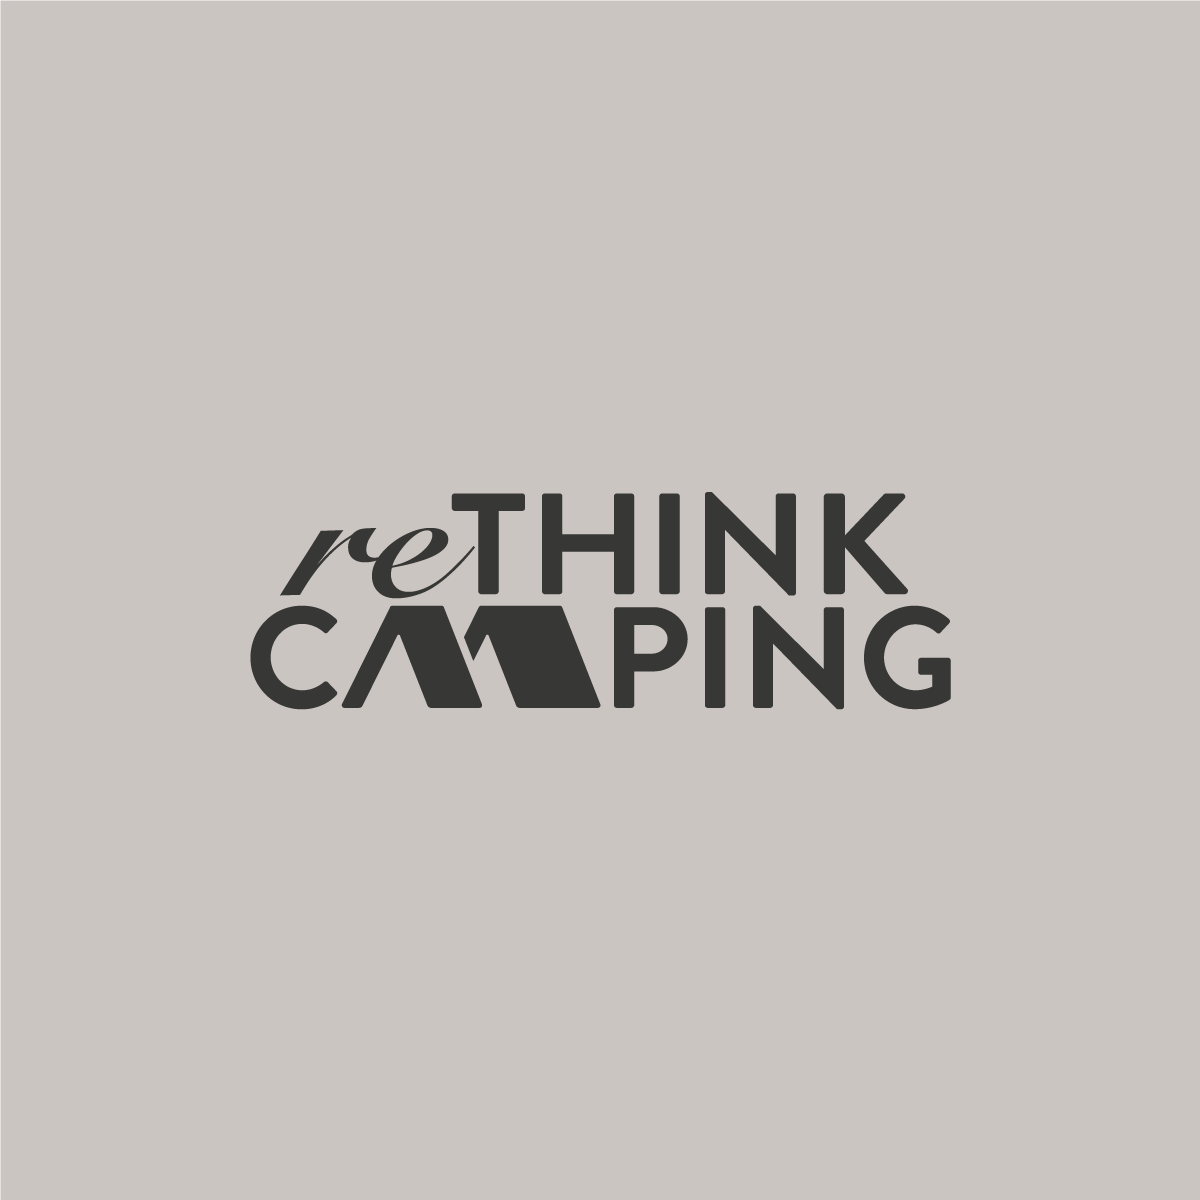 ReThink camping logo